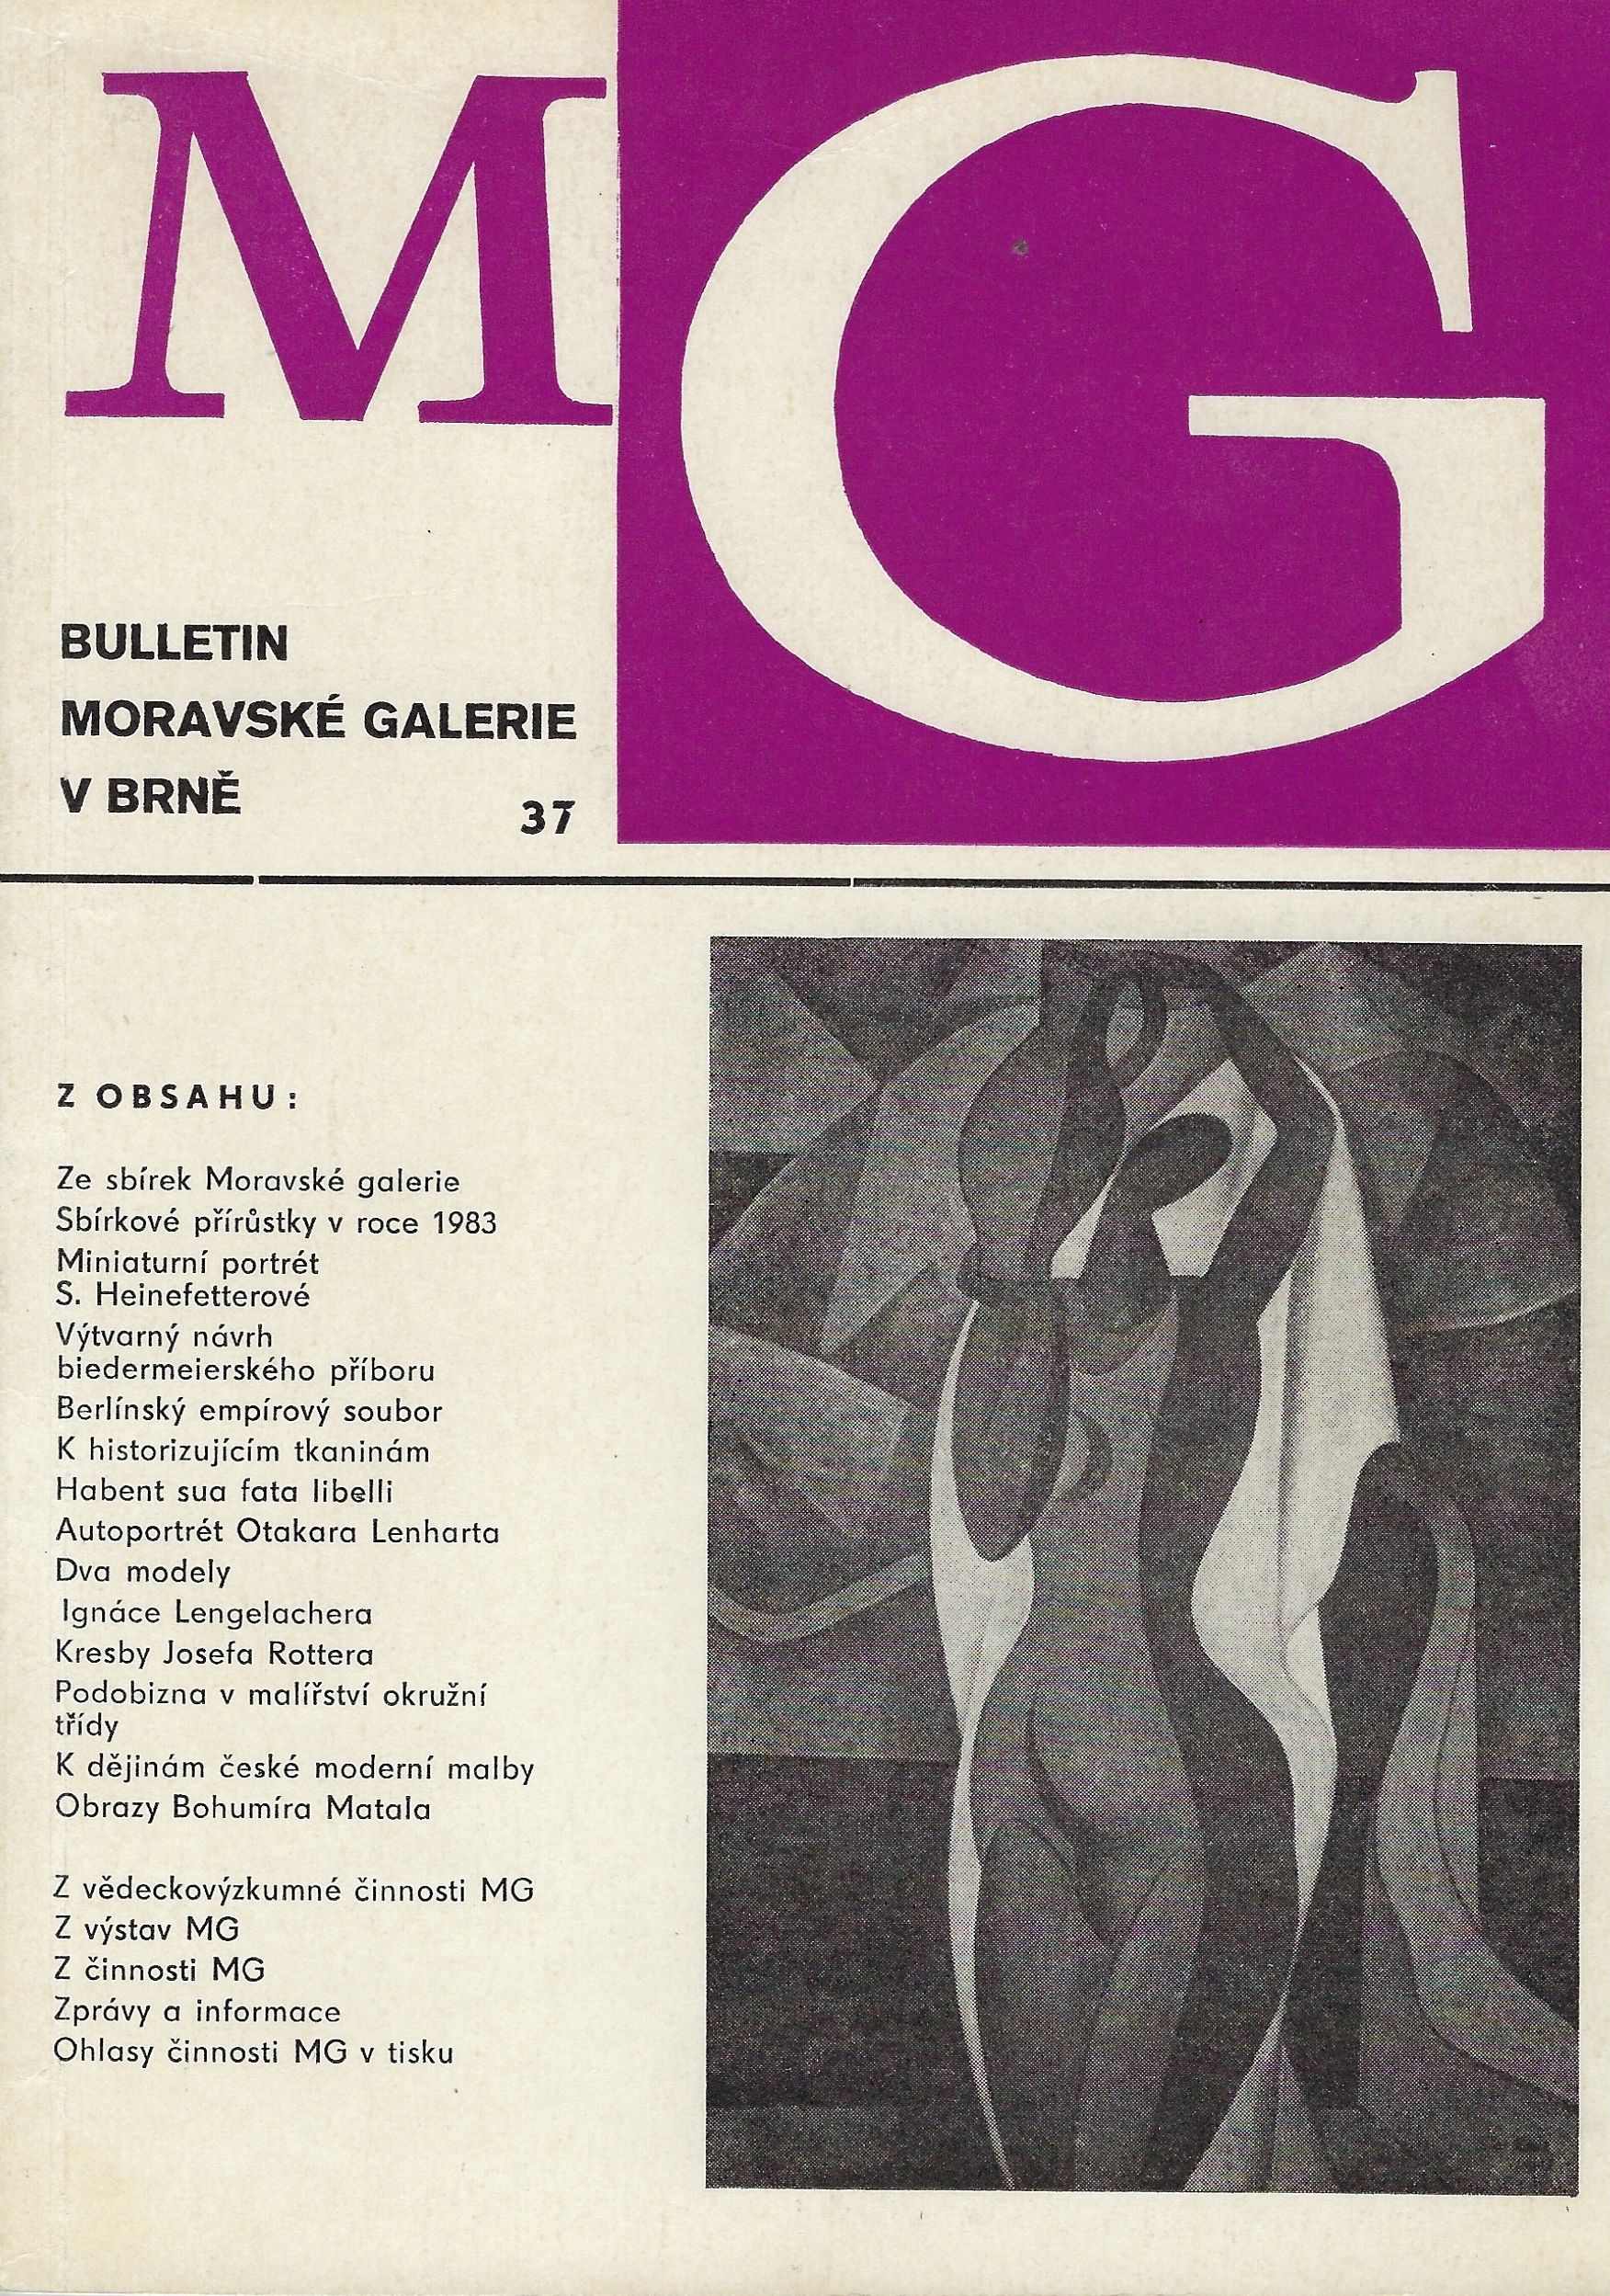 Bulletin Moravské galerie v Brně 37